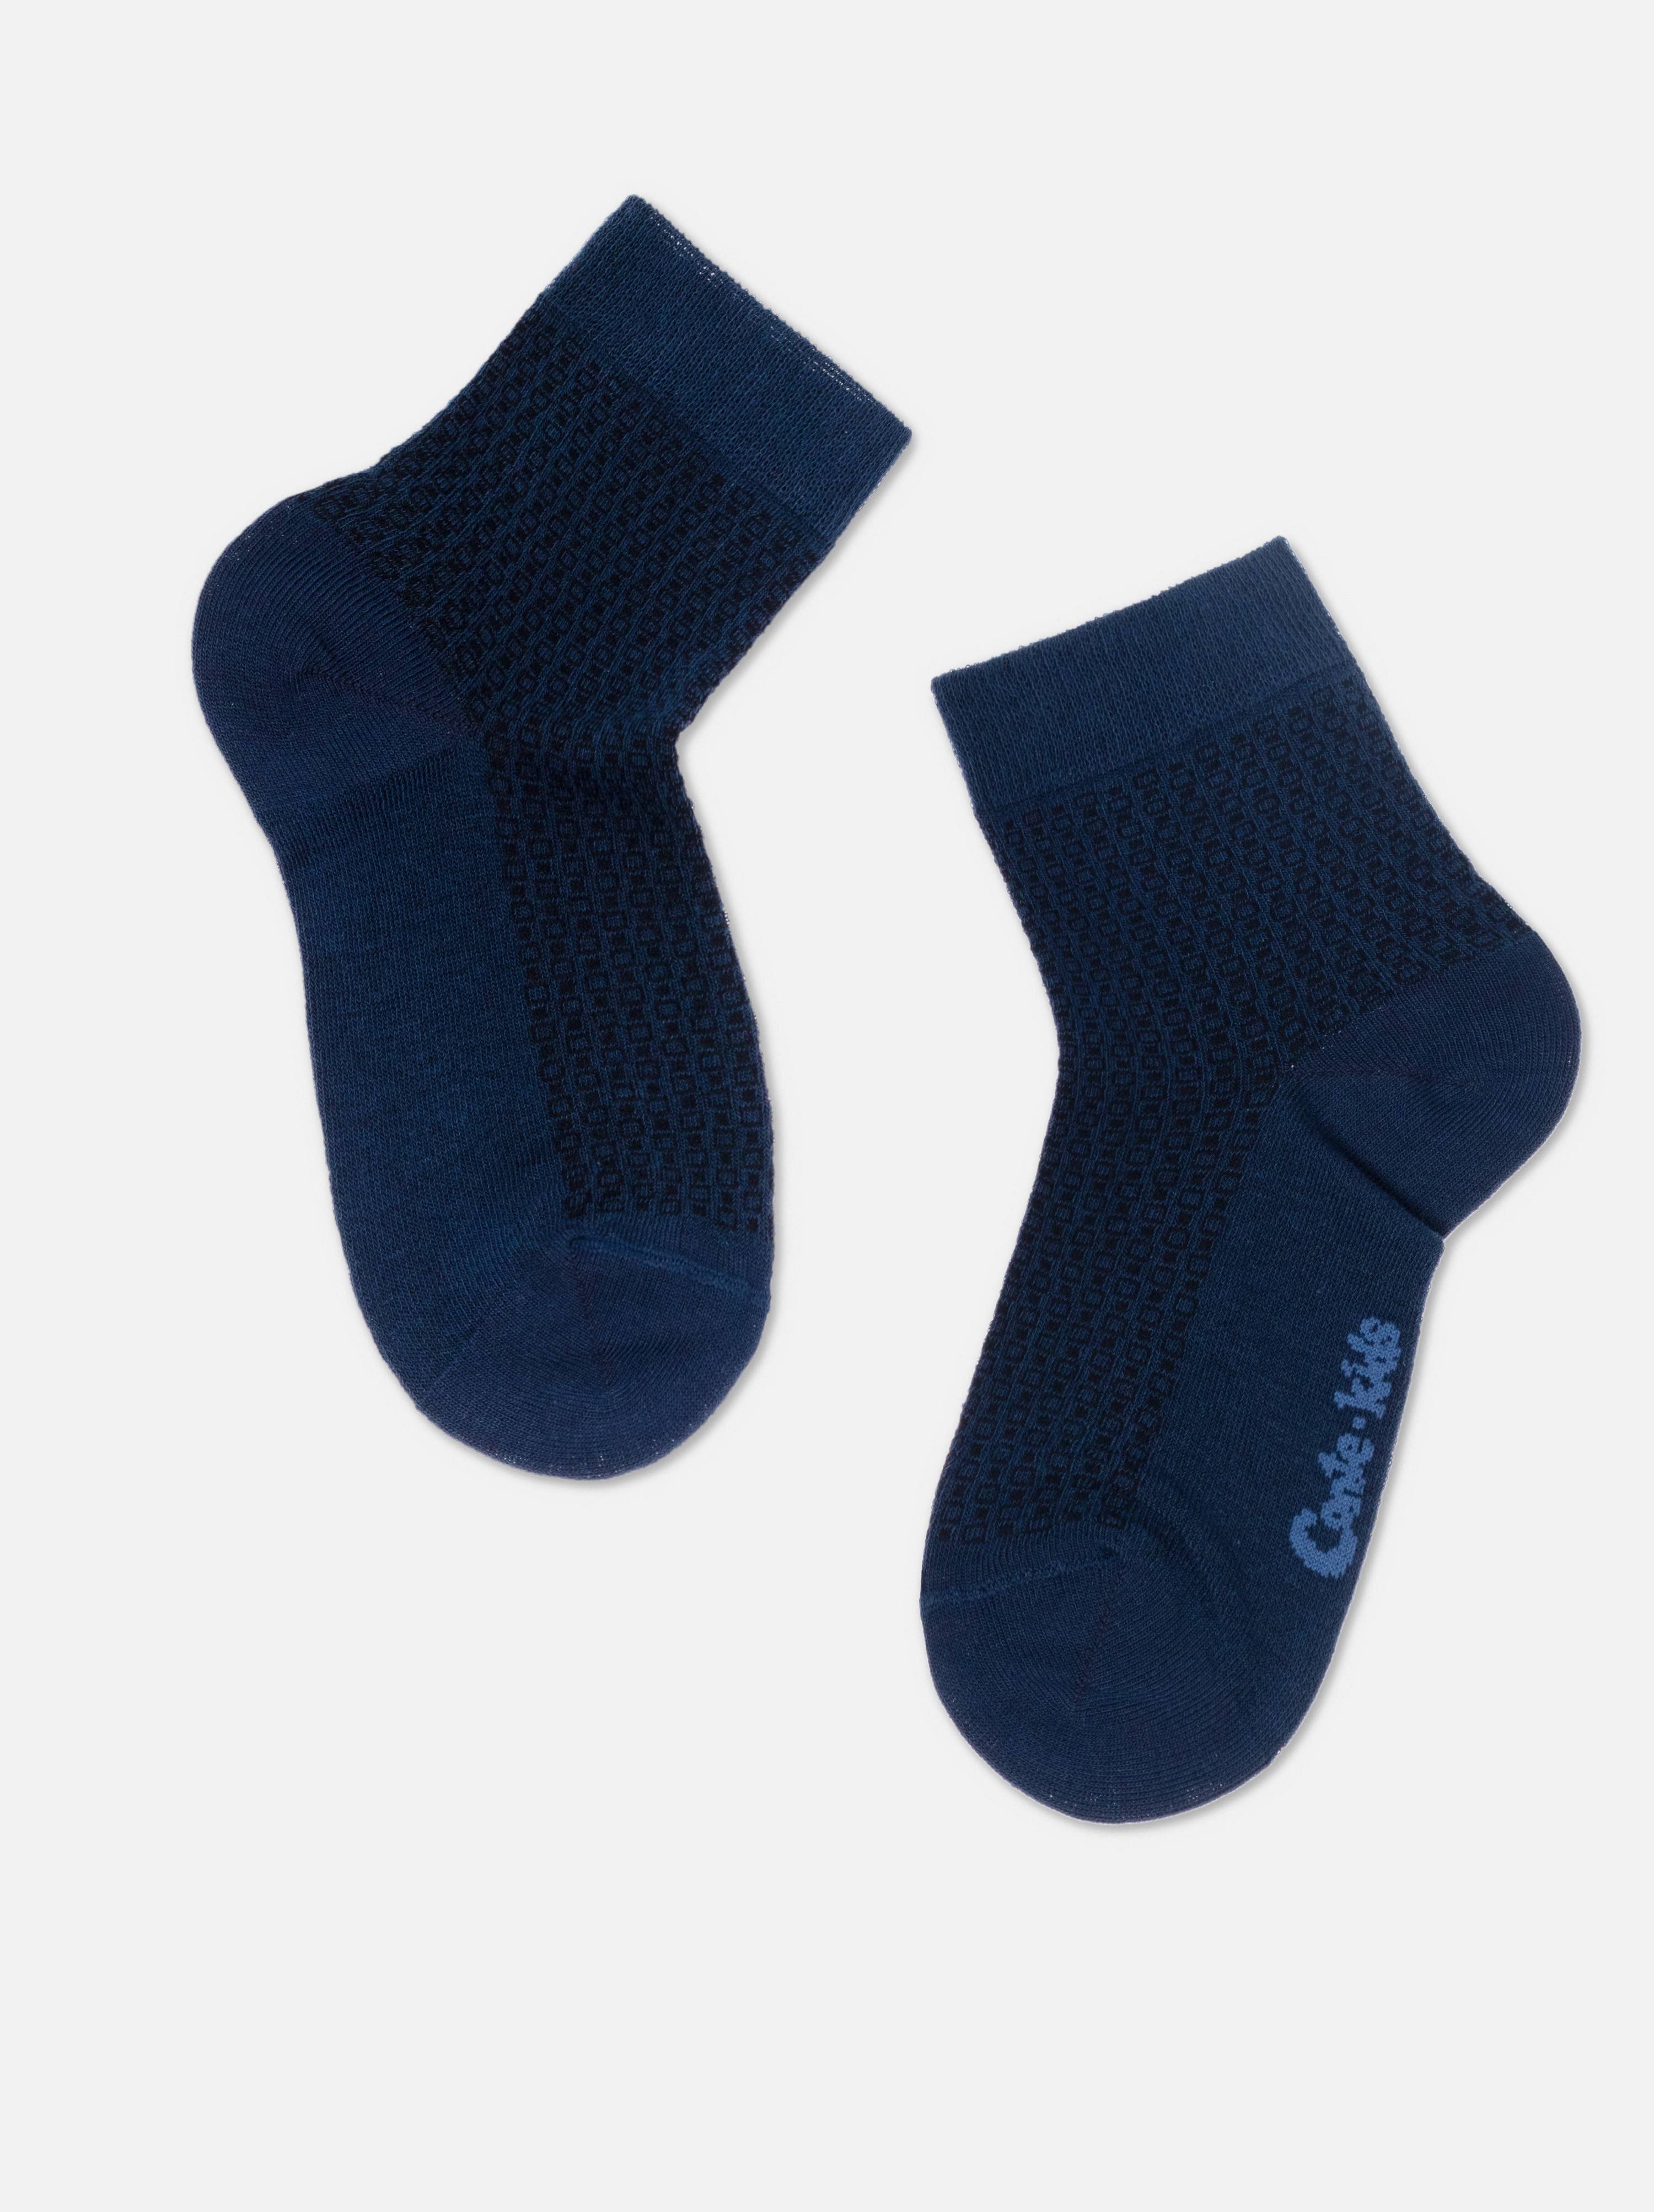 Базовые носки из хлопка с геометрическими рисунками Conte ⭐️, цвет темно-синий, размер 14